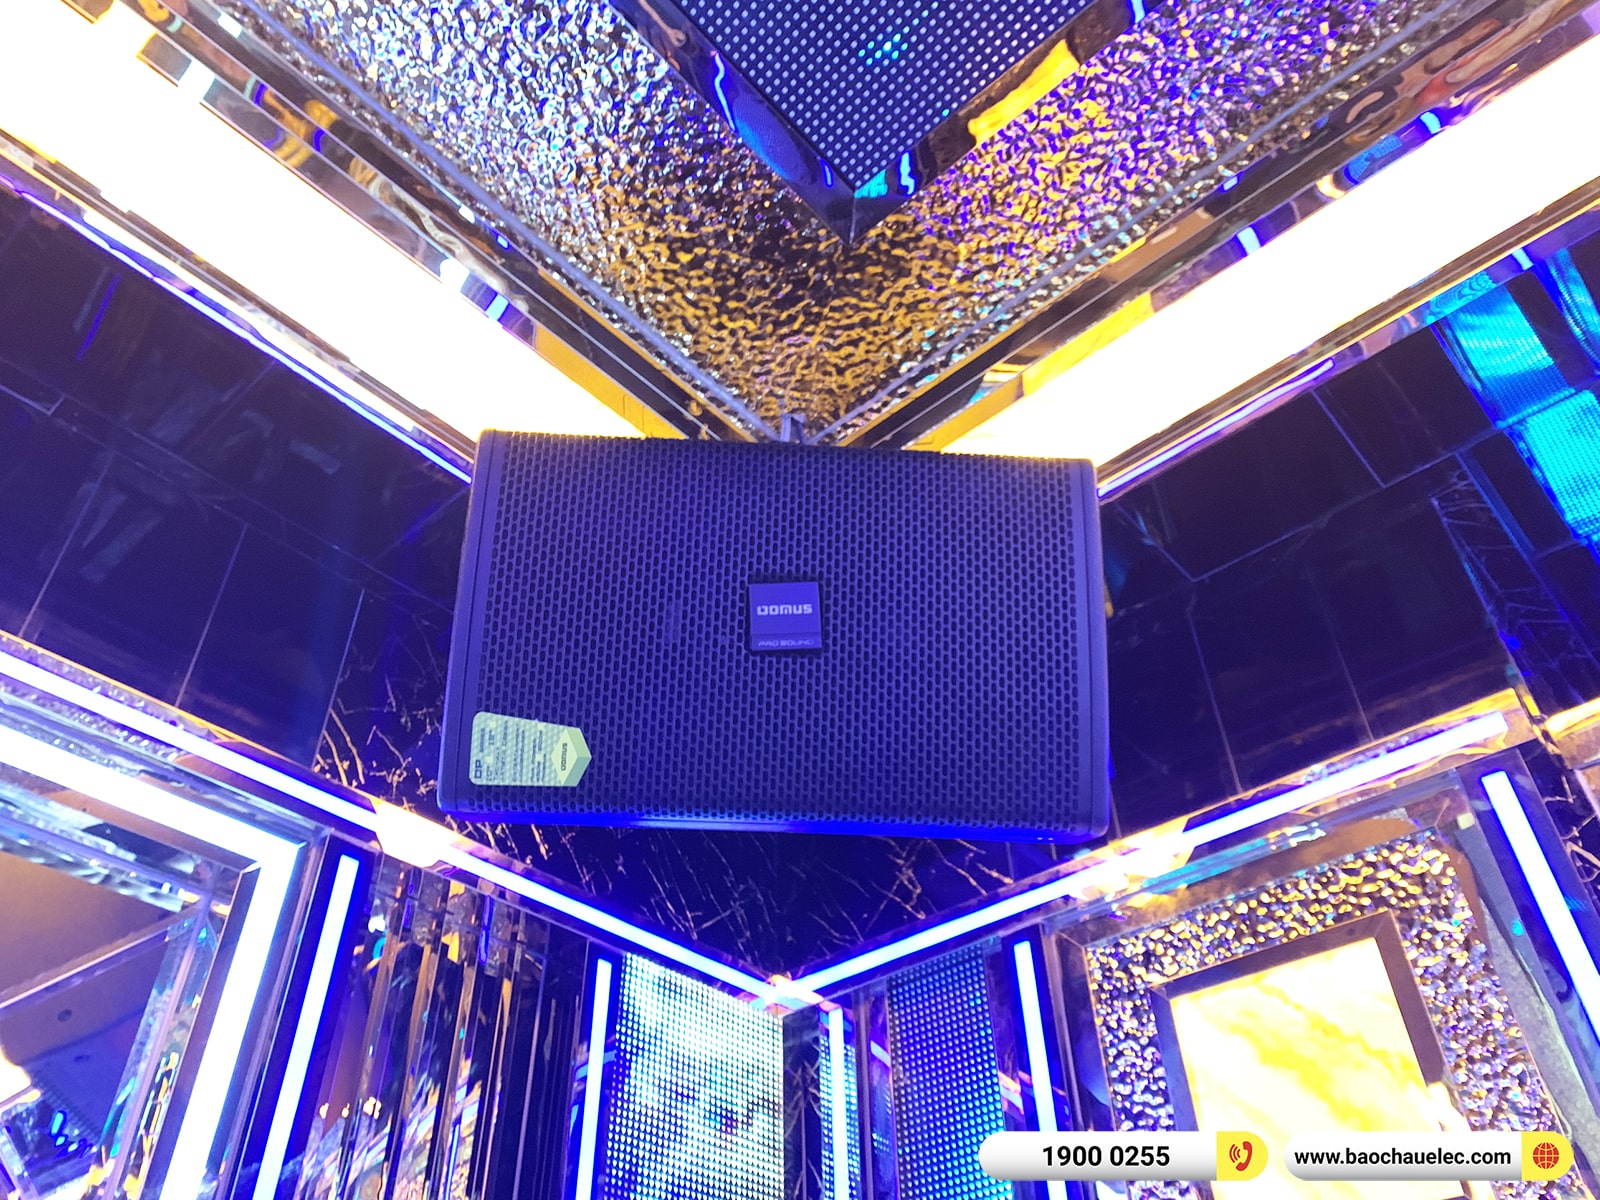 Lắp đặt 3 phòng hát kinh doanh gần 310tr cho karaoke Hi Club tại Hà Nội (Domus DP6120 Max, VM820A, VM1020A, KX180A,…)